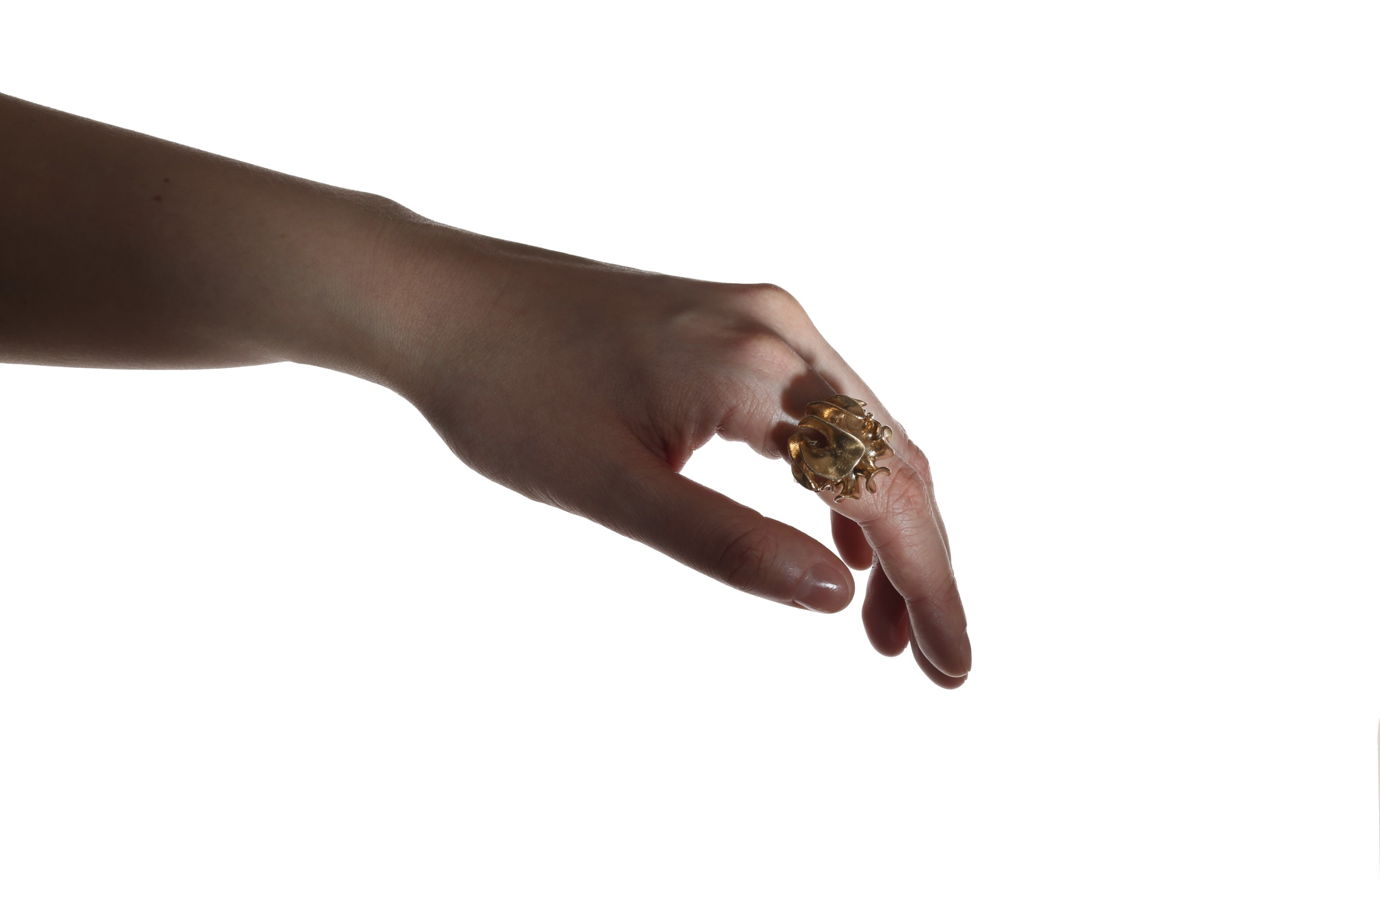 Дизайнерское коктейльное кольцо Flos бионической формы из бронзы